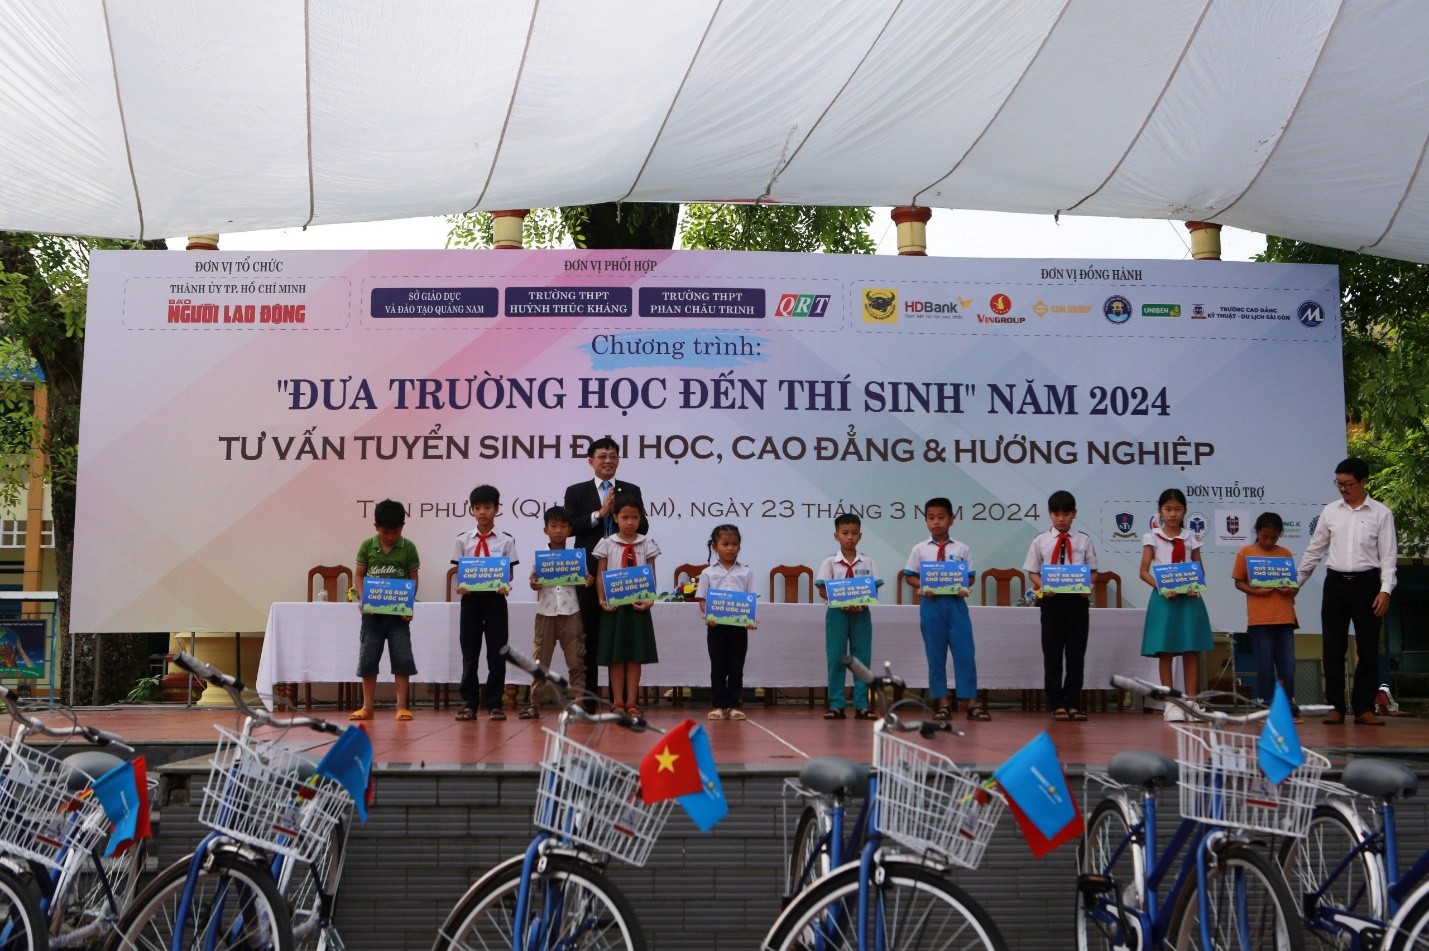 Chương trình “Đưa trường học đến thí sinh” do Báo Người Lao Động tổ chức với sự tham gia của hơn 1.500 học sinh  tại huyện Tiên Phước, tỉnh Quảng Nam